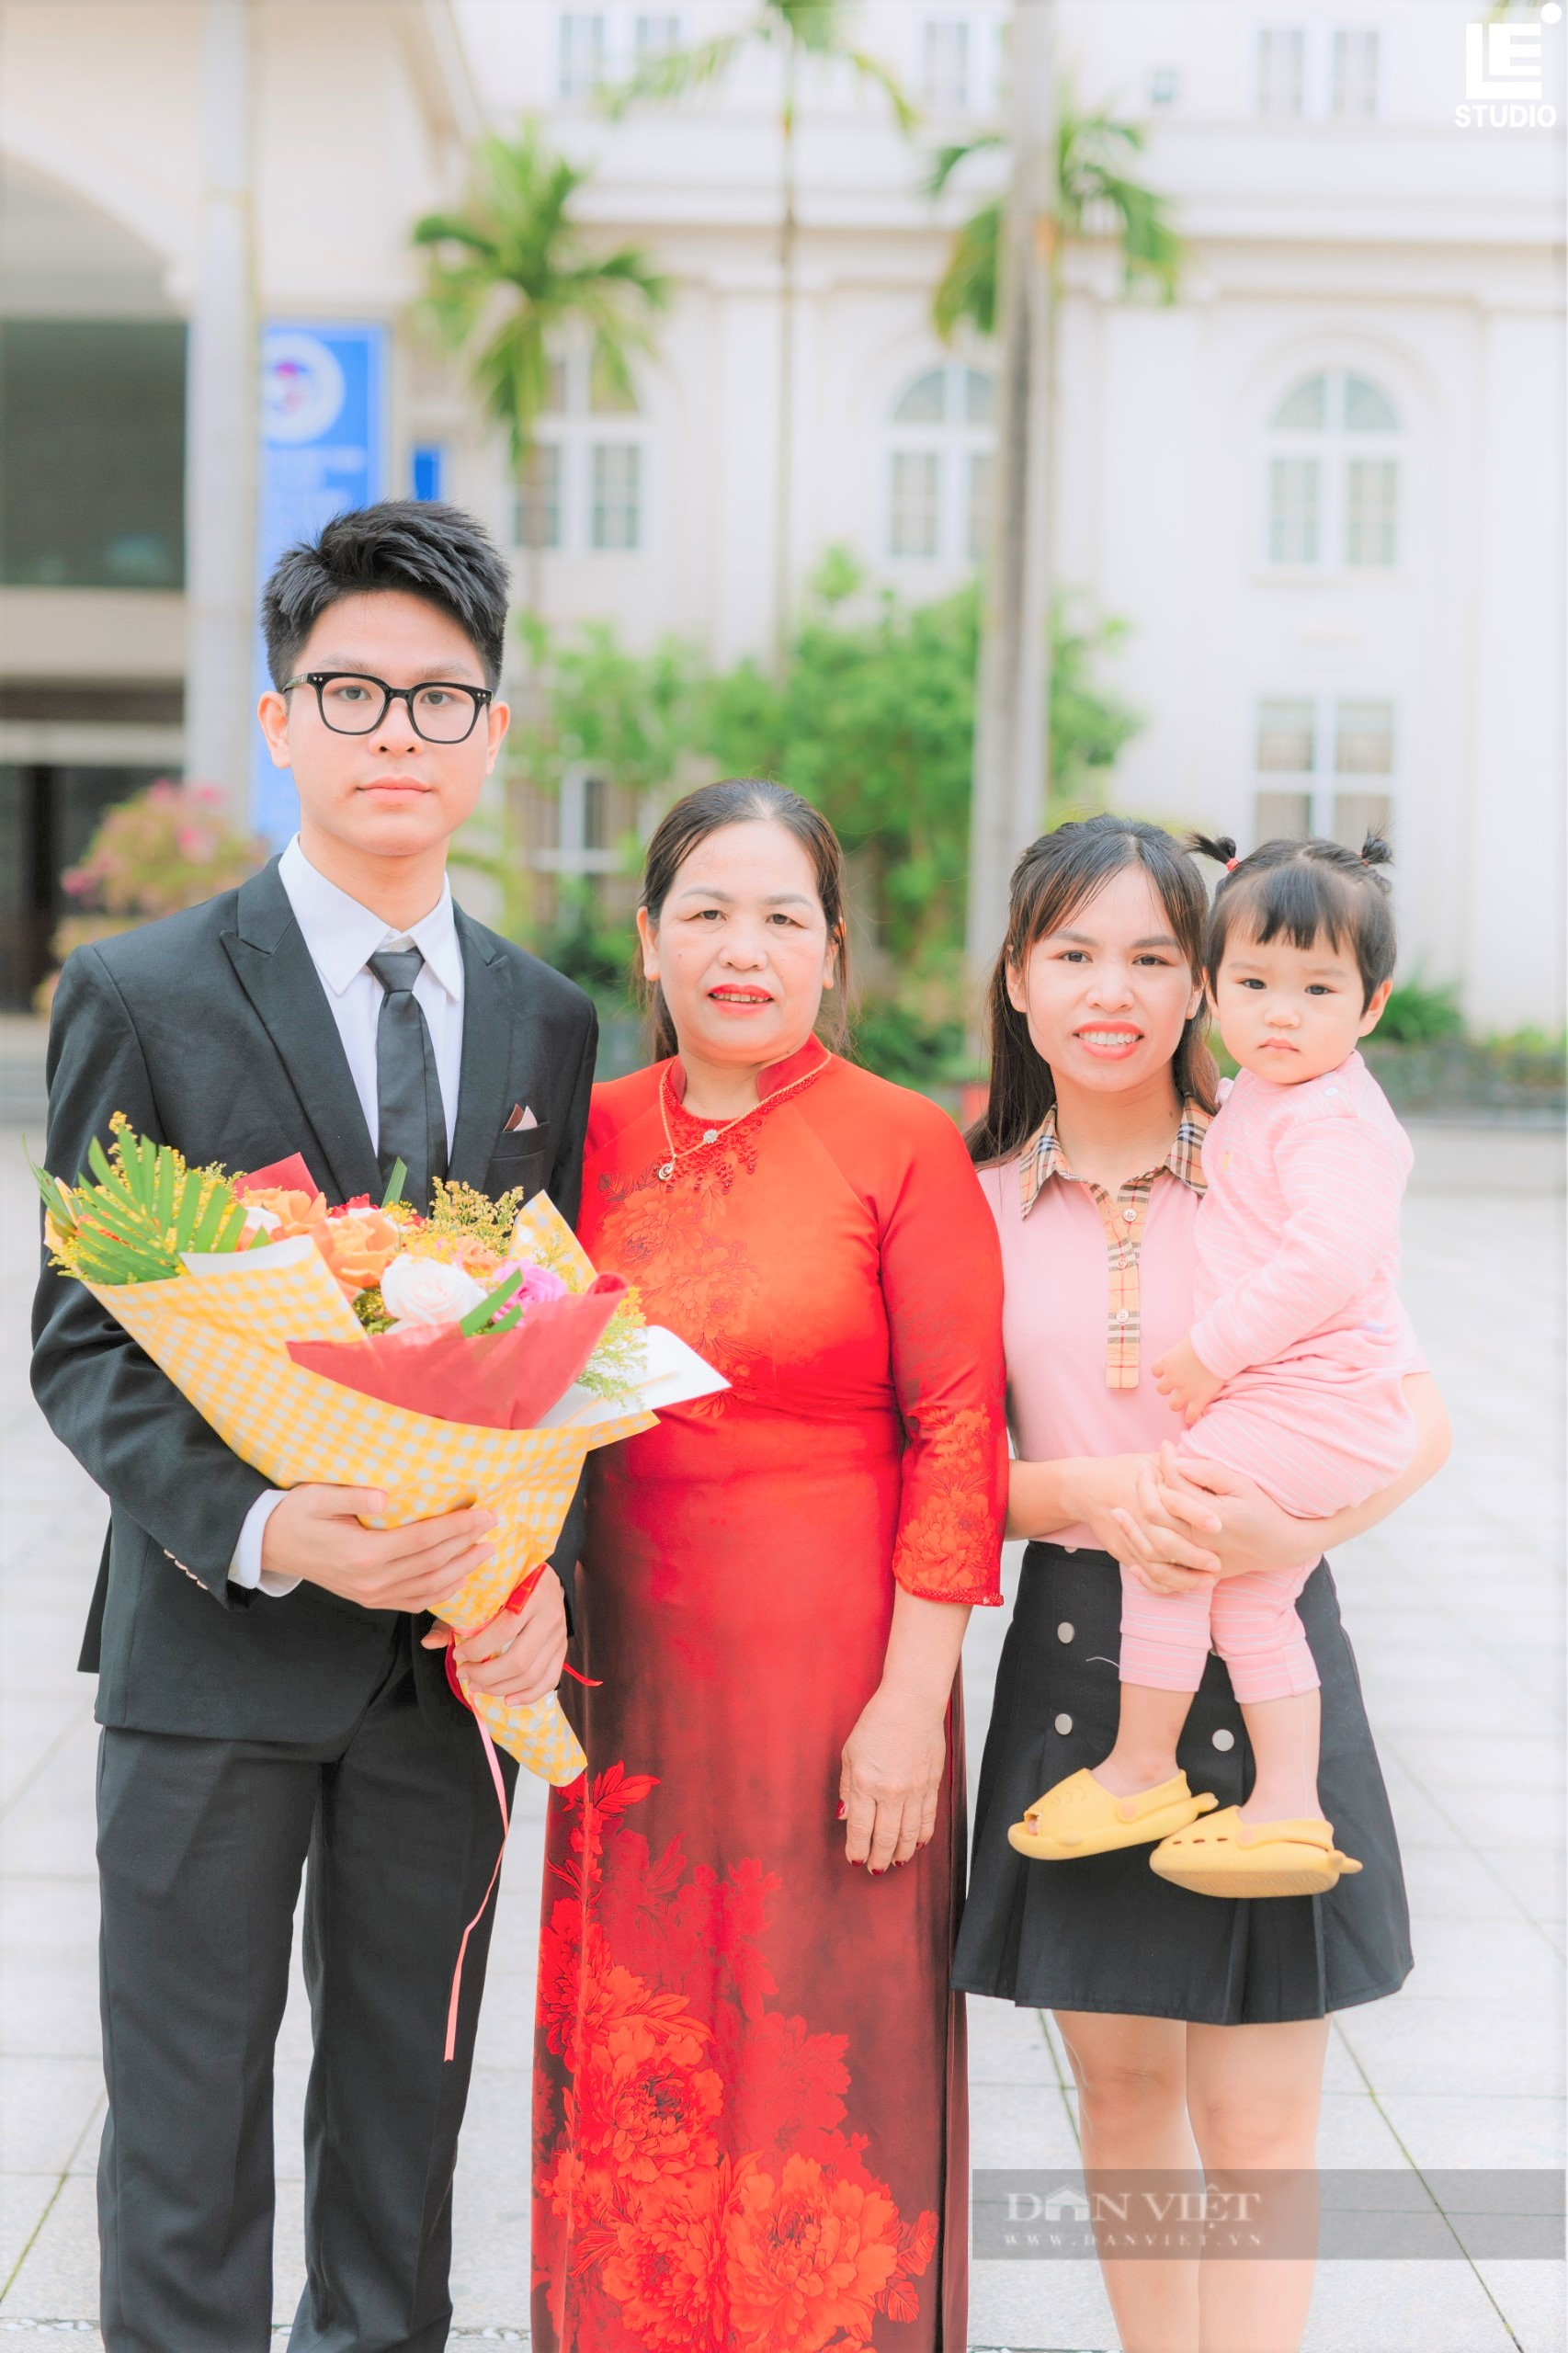 Hành trình “lột xác” để thay đổi cuộc đời của nam sinh Hà Tĩnh, giành 4 suất học bổng danh tiếng ở Mỹ - Ảnh 2.